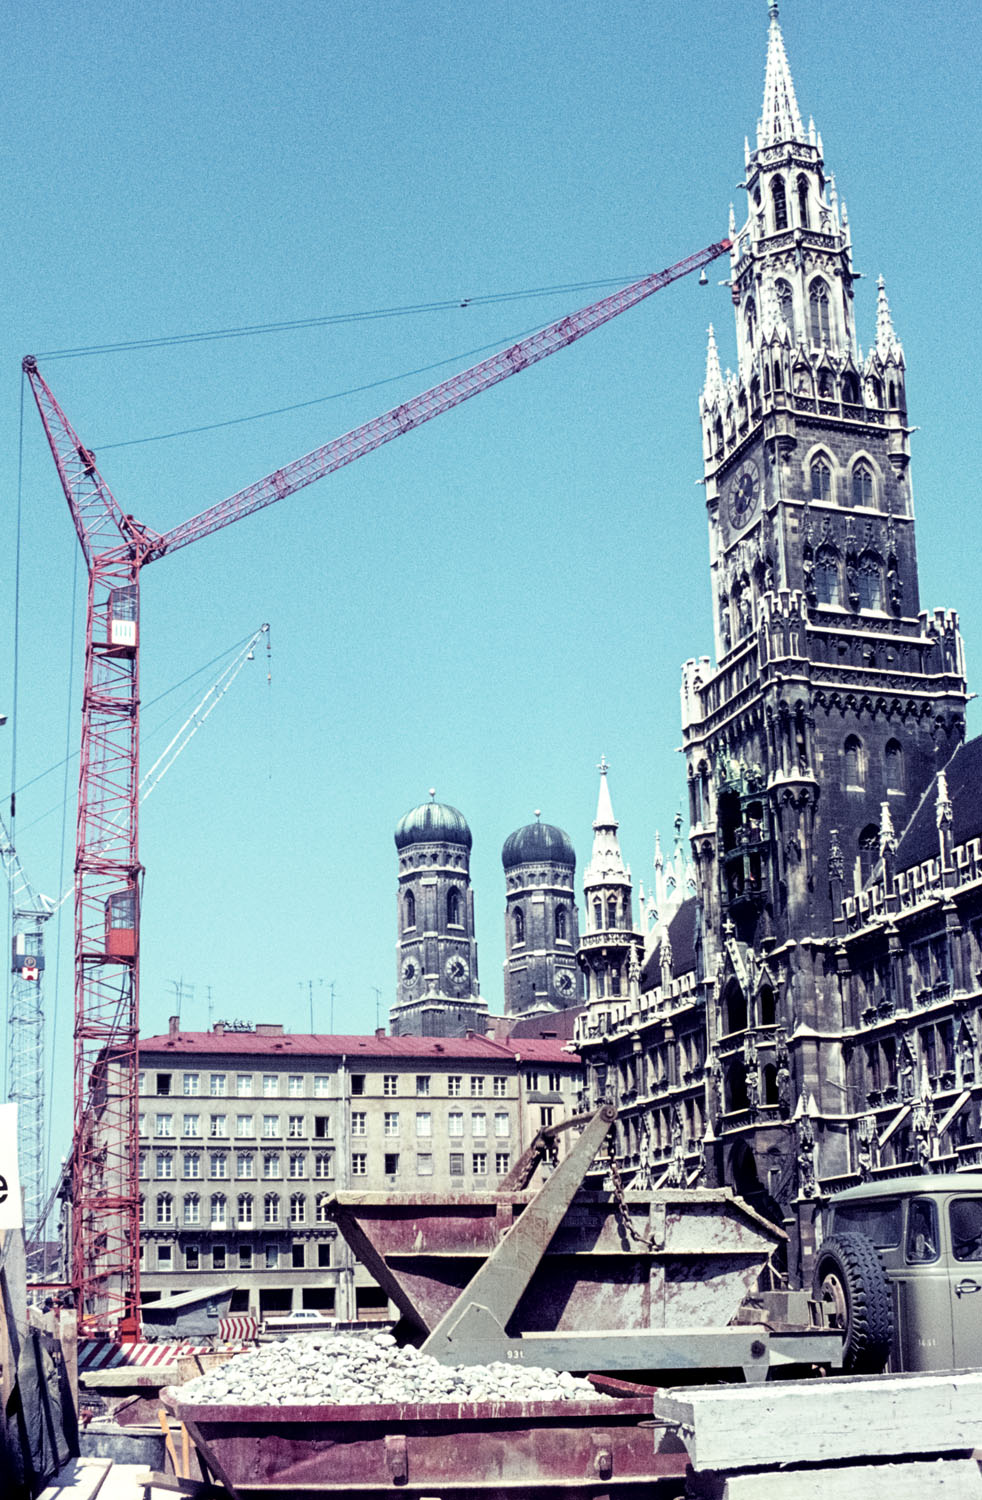 Fotografie einer großen Baustelle in der Innenstadt München. Im Hintergrund ein neugotischer Turm.